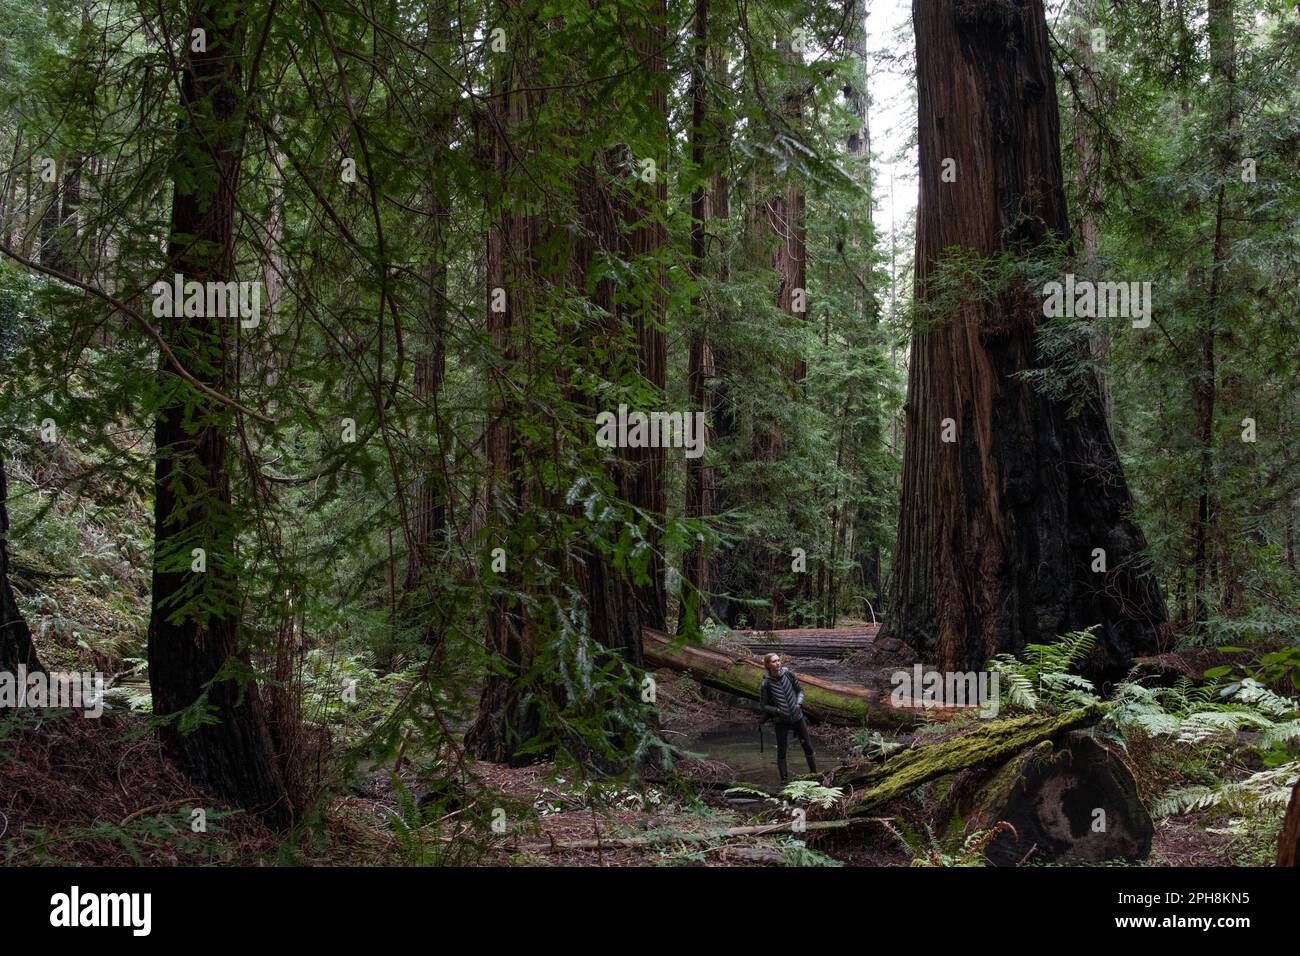 Eine Wanderer steht im Küstenmammutbaum, Sequoia sempervirens und Wald und ist winzig im Vergleich zu den riesigen Bäumen. Stockfoto